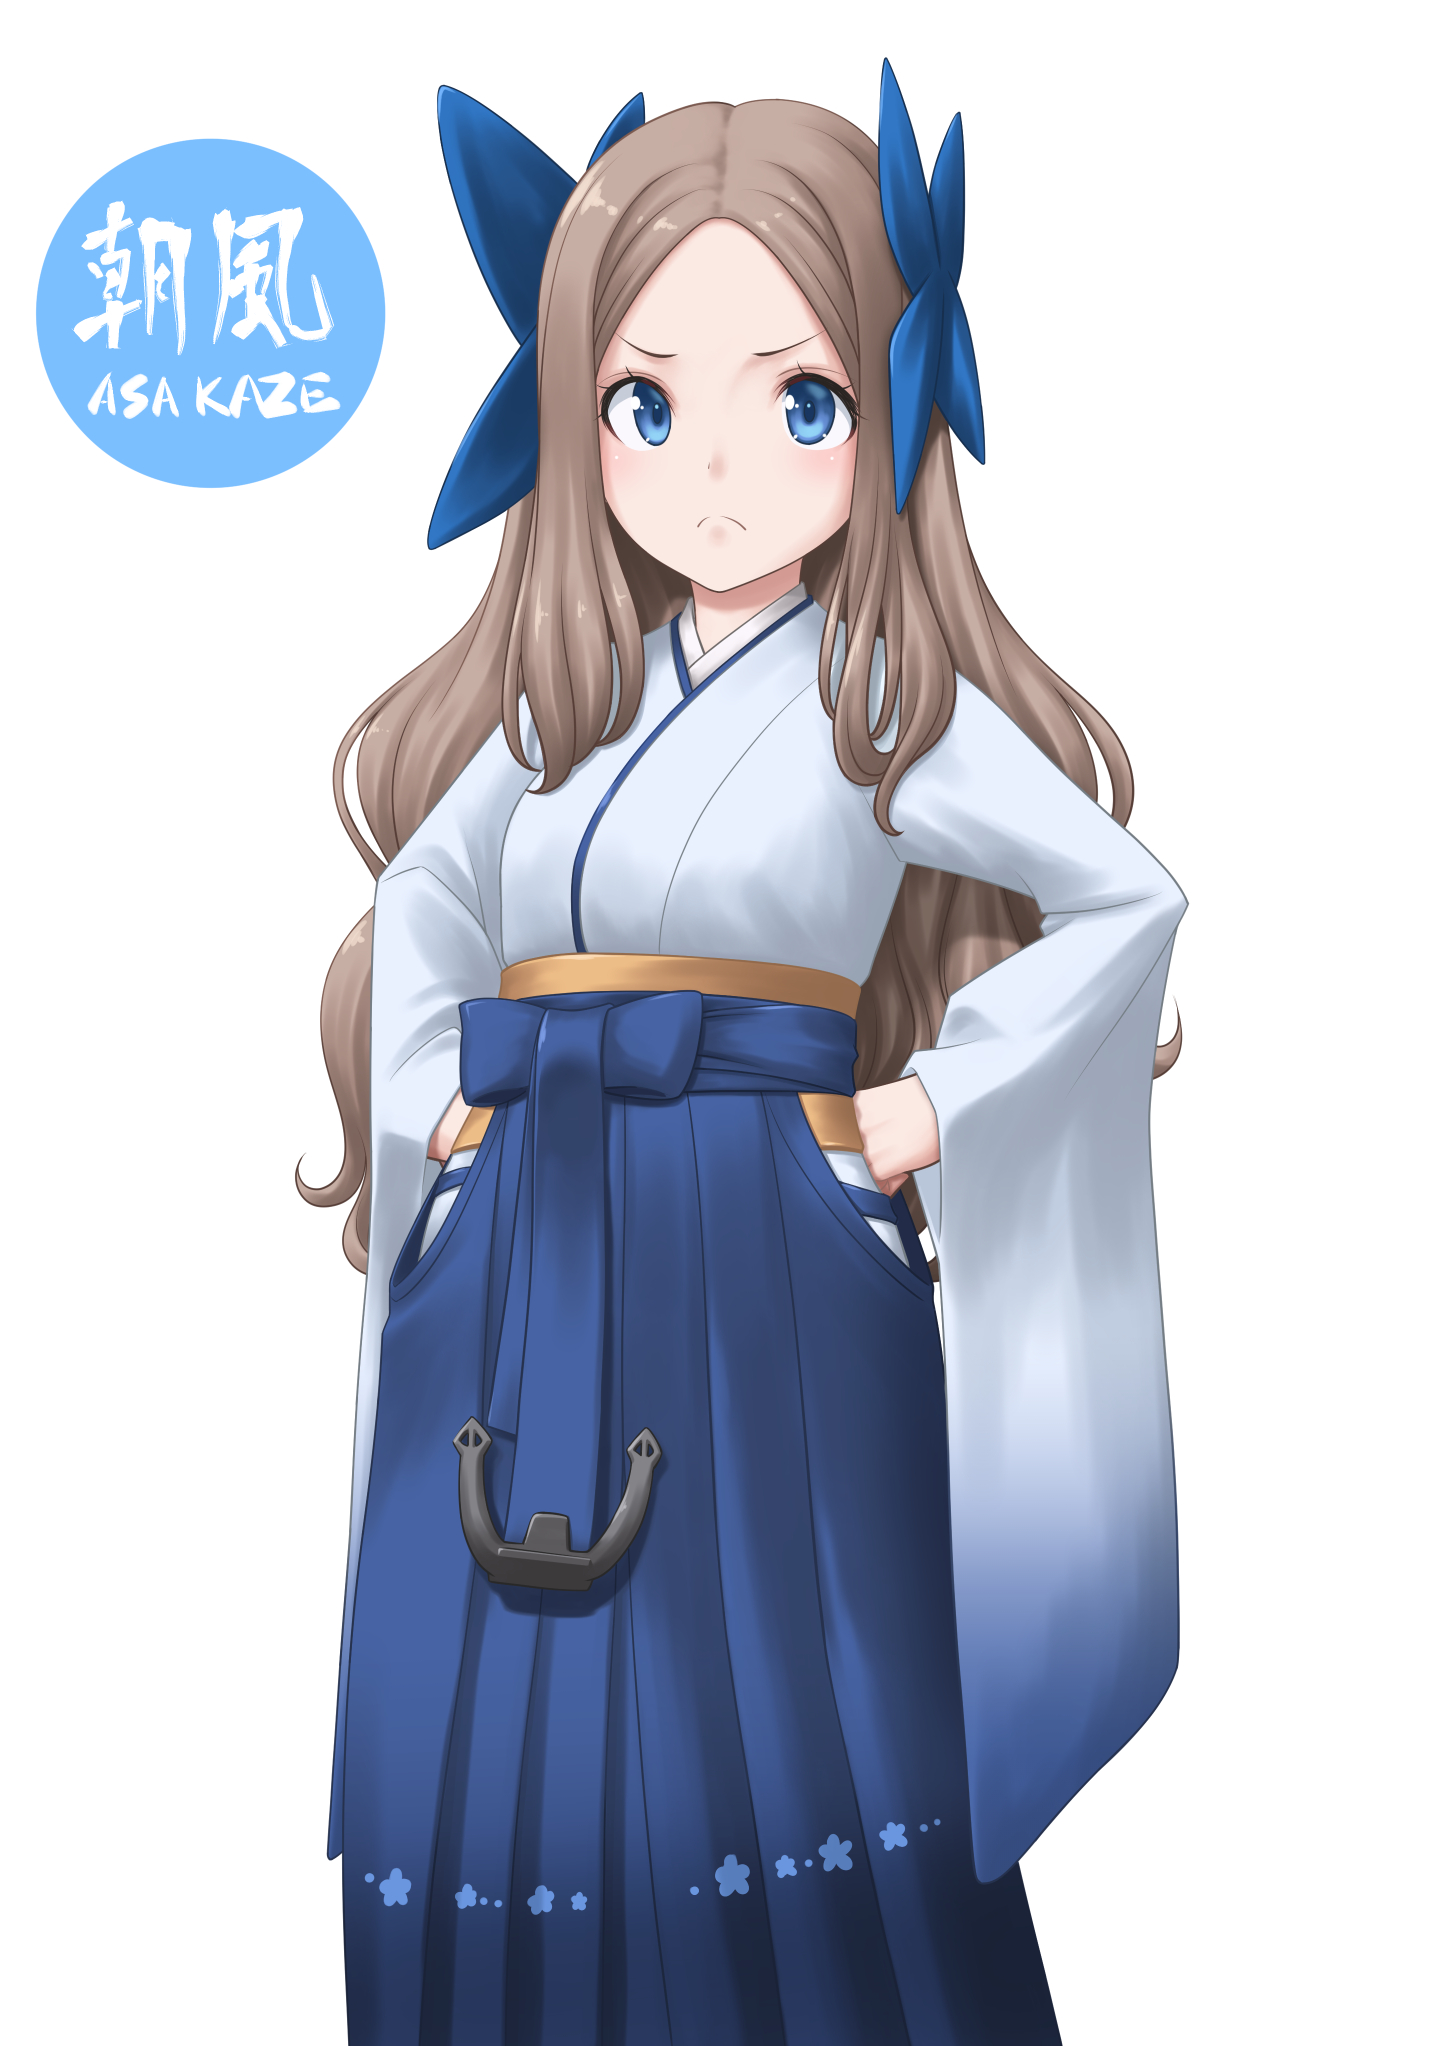 Anime Anime Girls Kantai Collection Asakaze Kancolle Long Hair Brunette Artwork Digital Art Fan Art  1447x2046